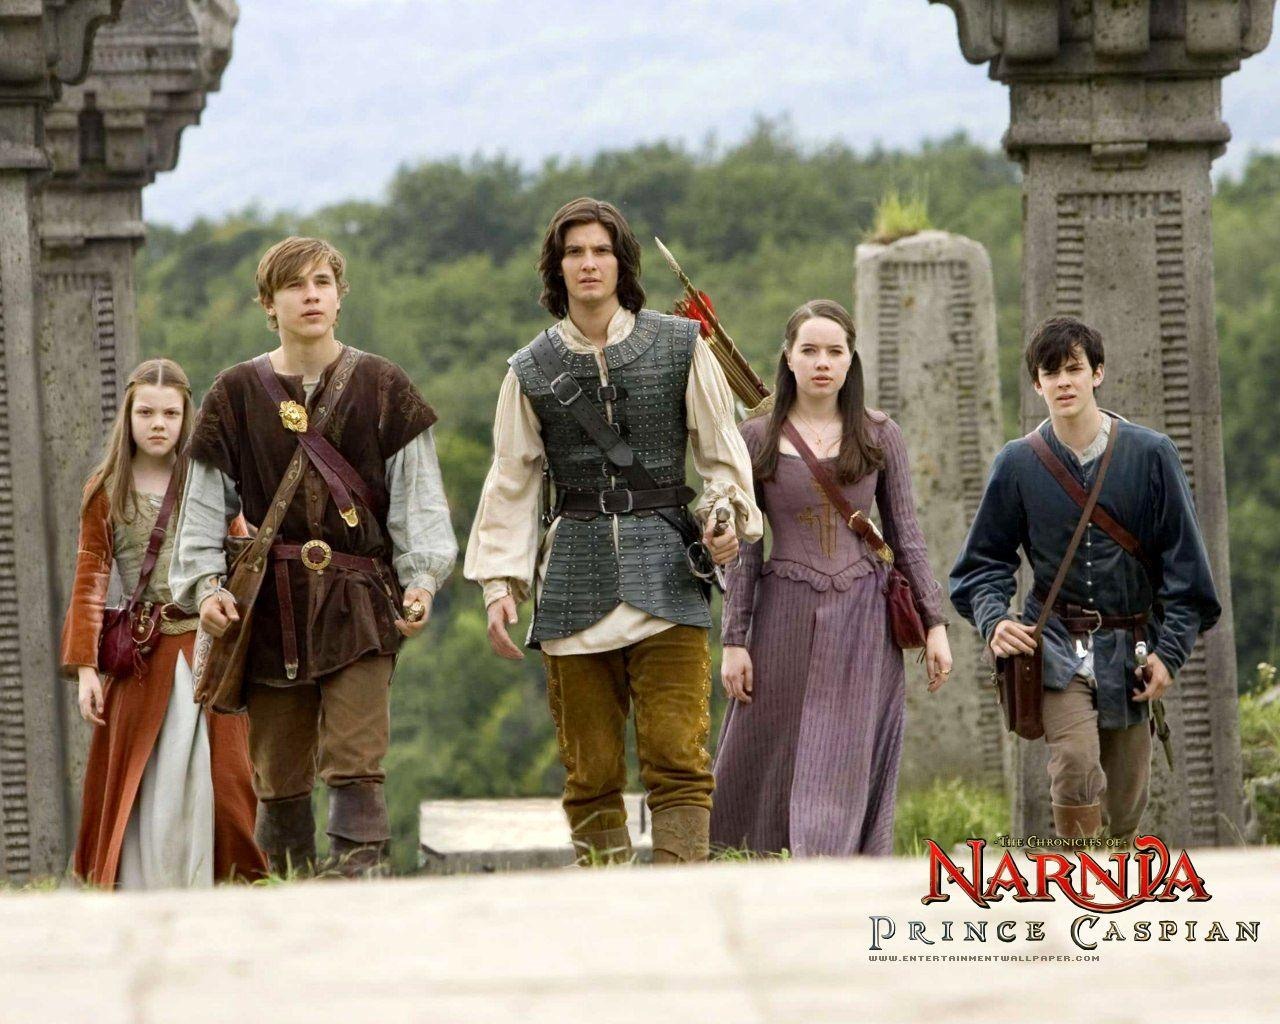 Le Monde de Narnia 2: Prince Caspian #2 - 1280x1024